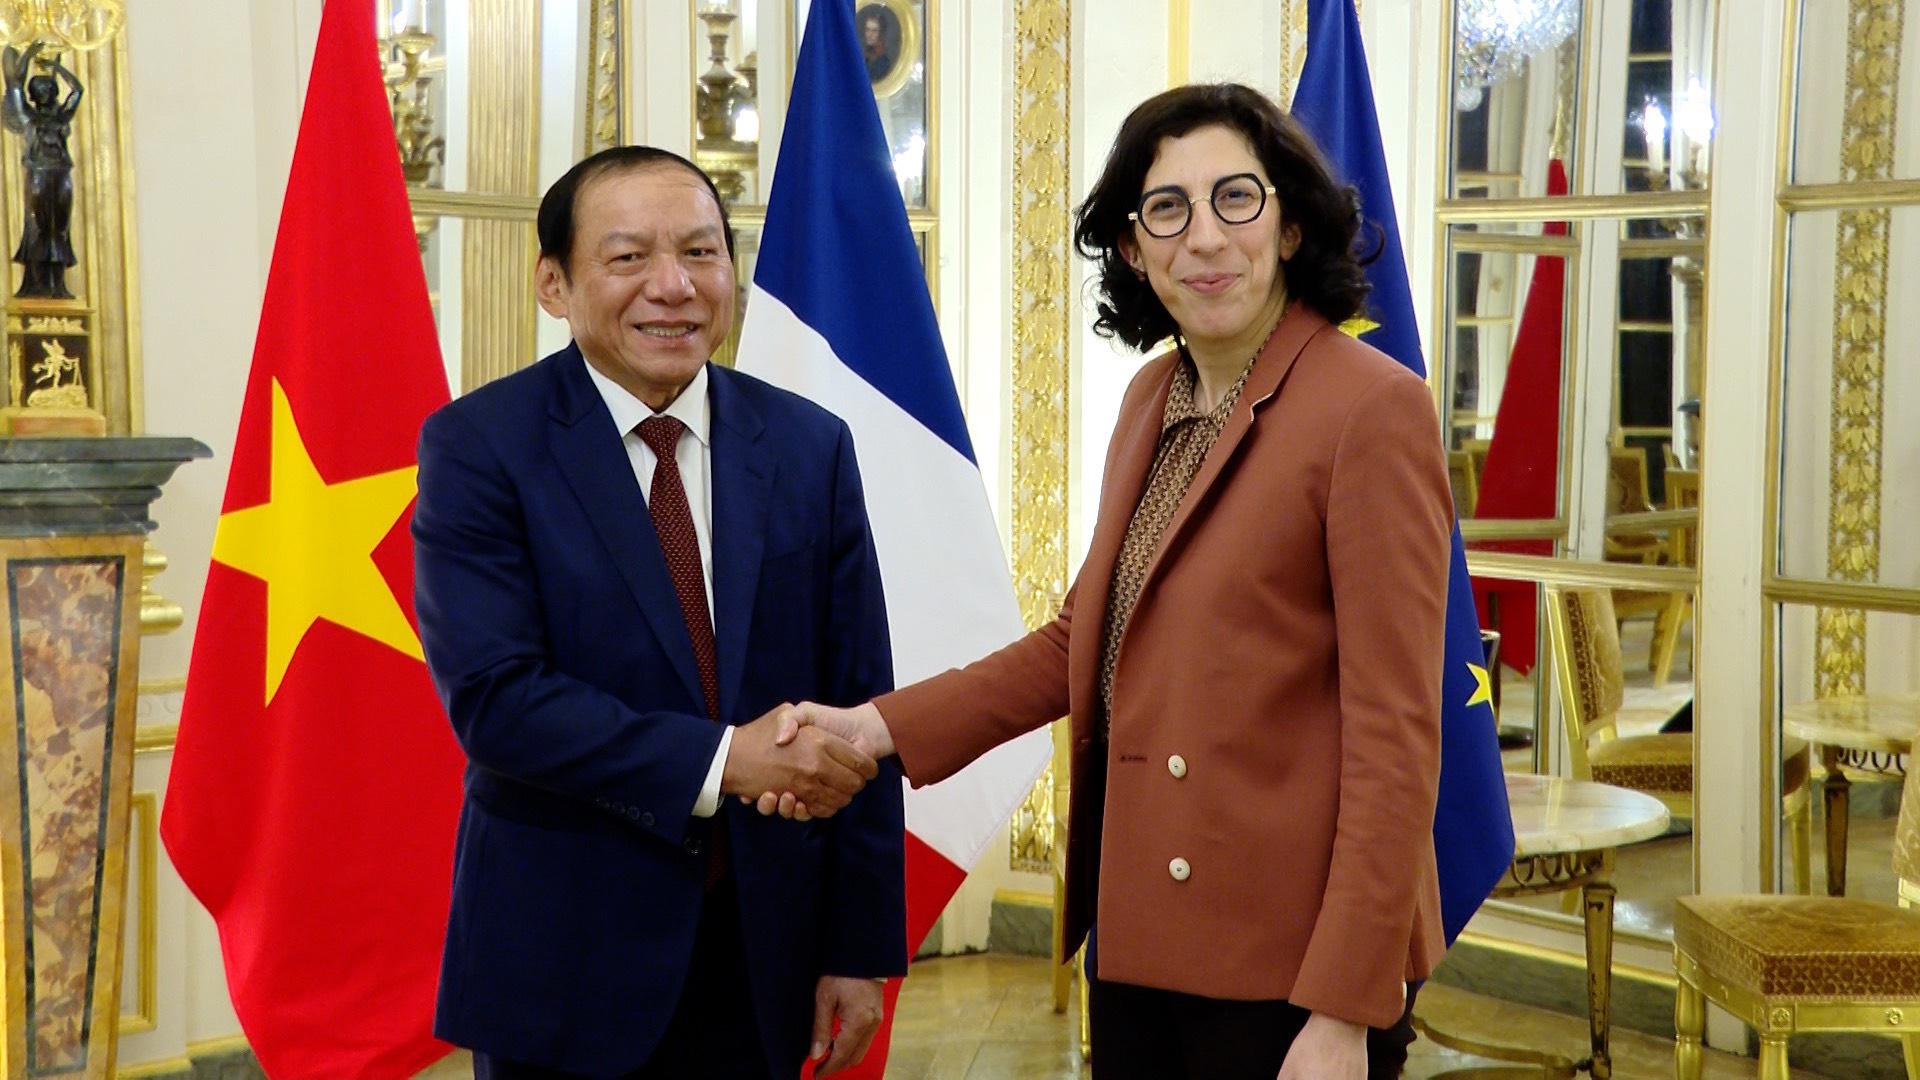 Chuyến công tác tại Pháp của Bộ trưởng Nguyễn Văn Hùng tuy ngắn nhưng đạt hiệu quả “5 trong 1” - Ảnh 1.